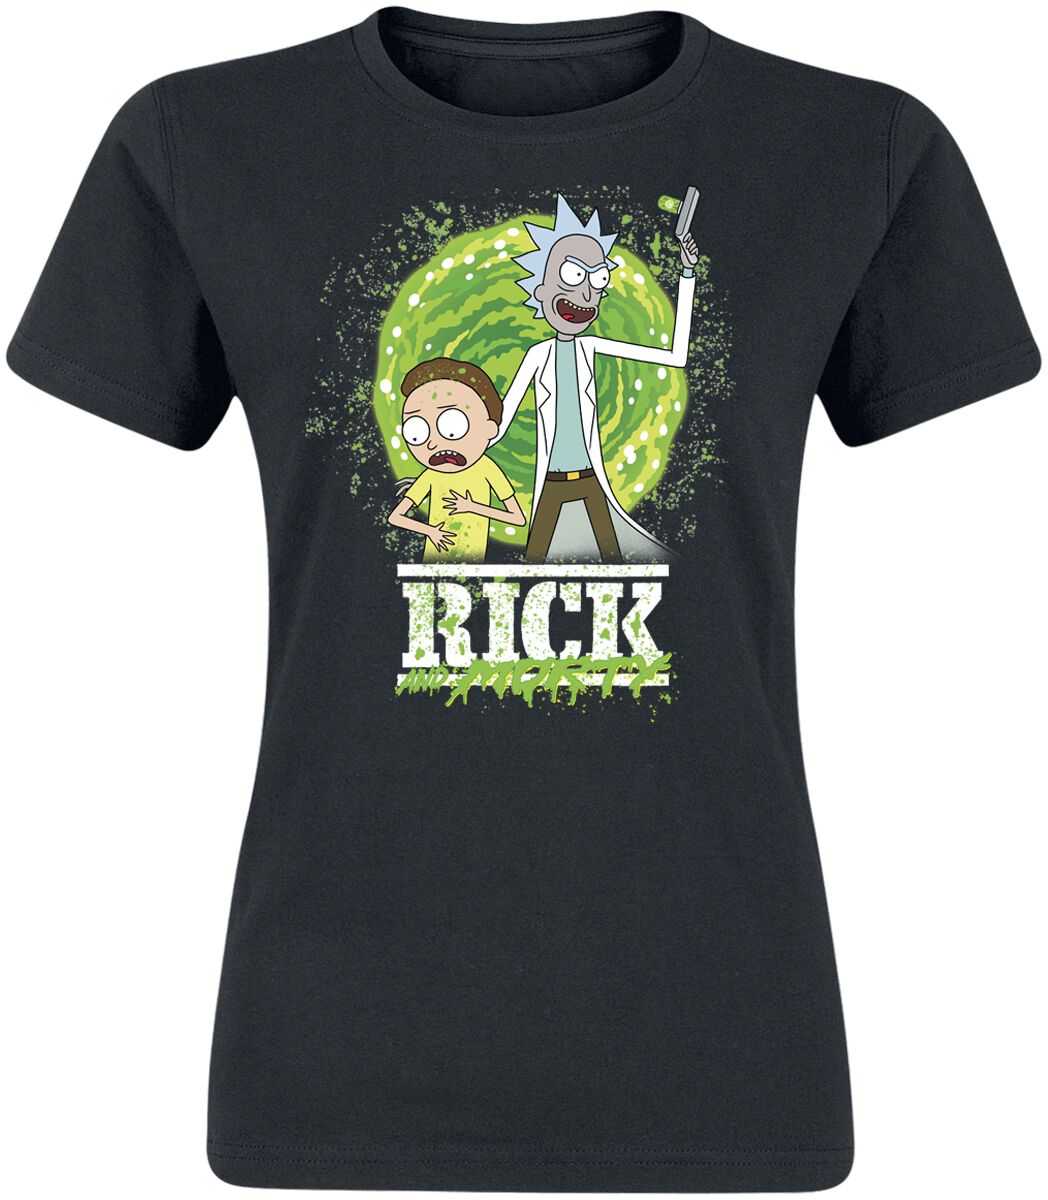 Rick And Morty T-Shirt - Season 6 - S bis XXL - für Damen - Größe XXL - schwarz  - EMP exklusives Merchandise!